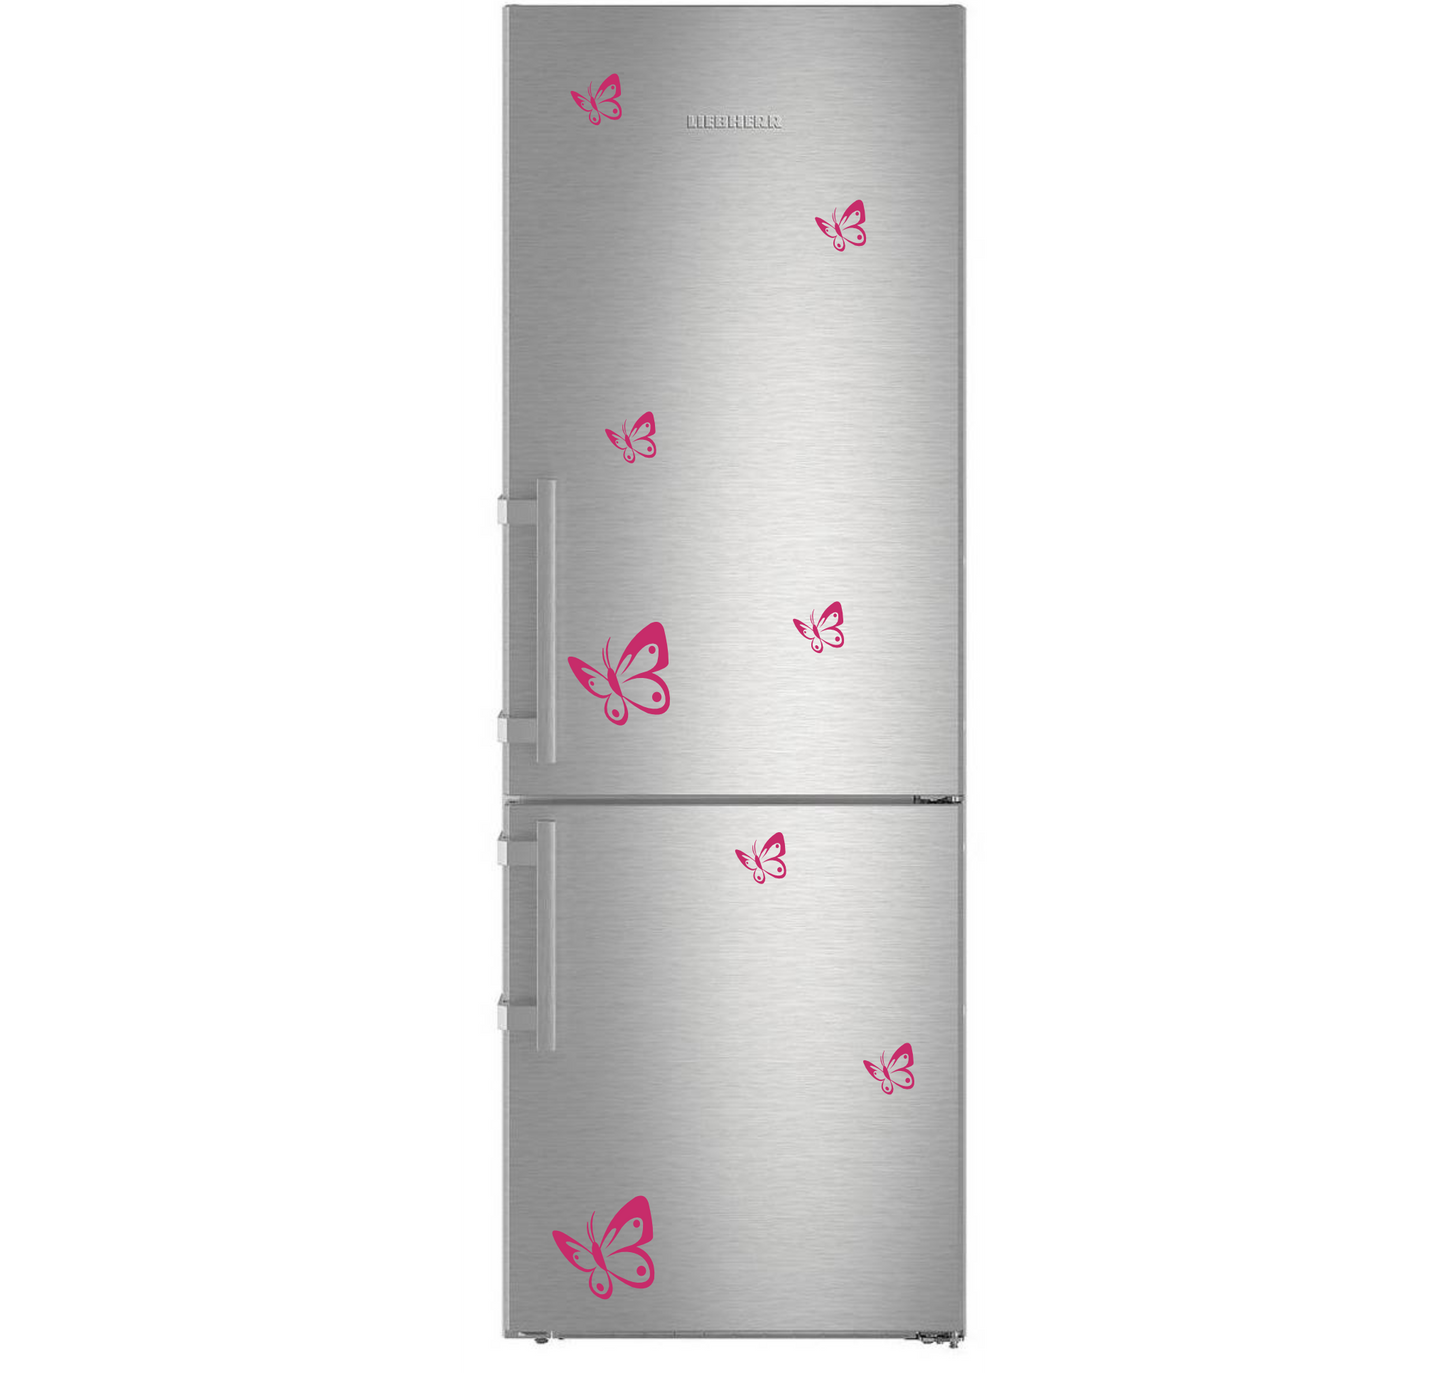 Adesivi per casa stickers farfalle doccia Cappa cucina frigorifero vetro wc toilette decorazione bagno stickers casa accessori auto I0146 a €13.00 solo da DualColorStampe